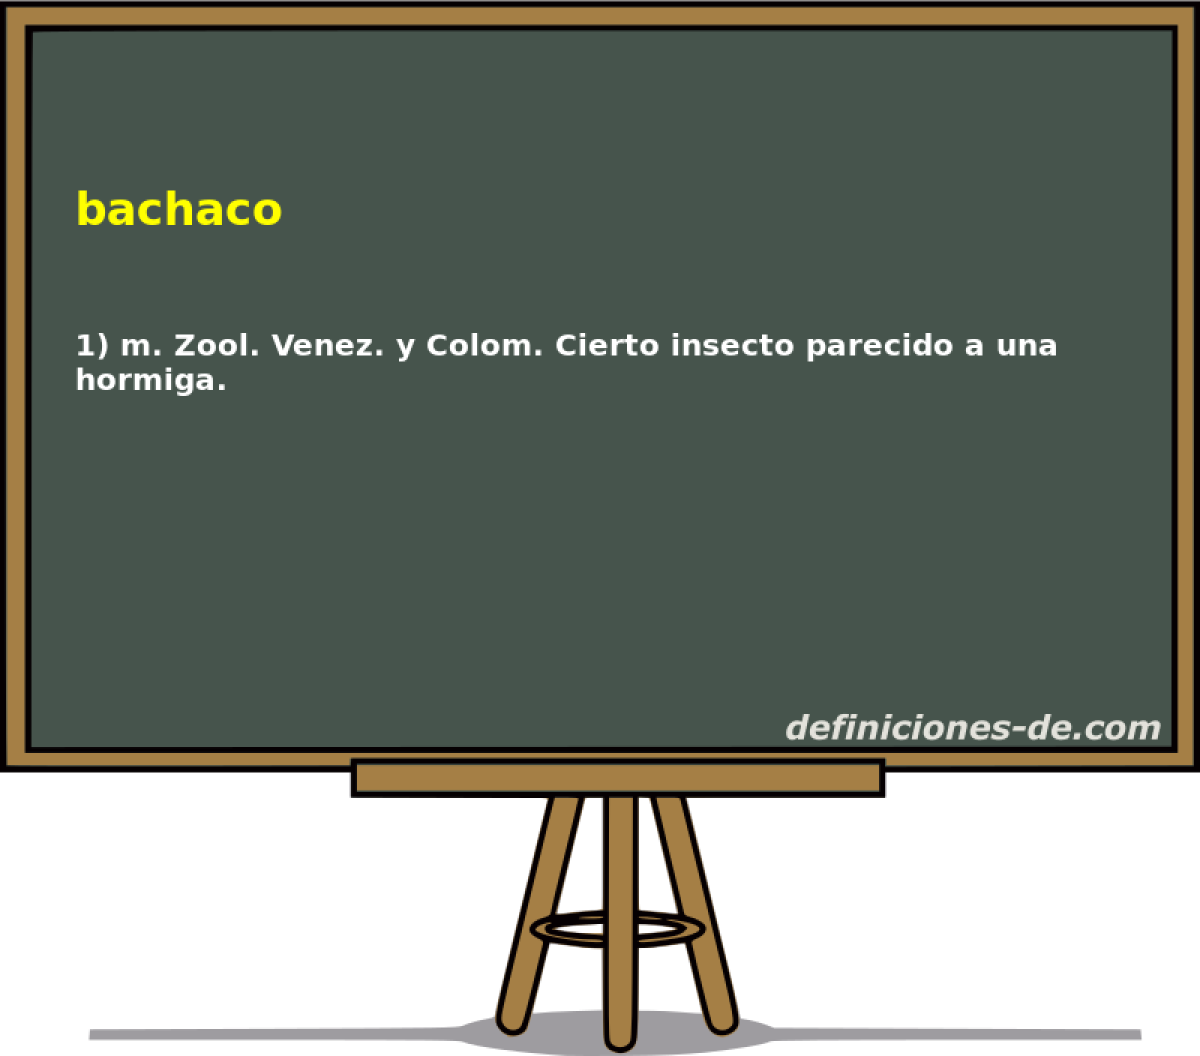 bachaco 